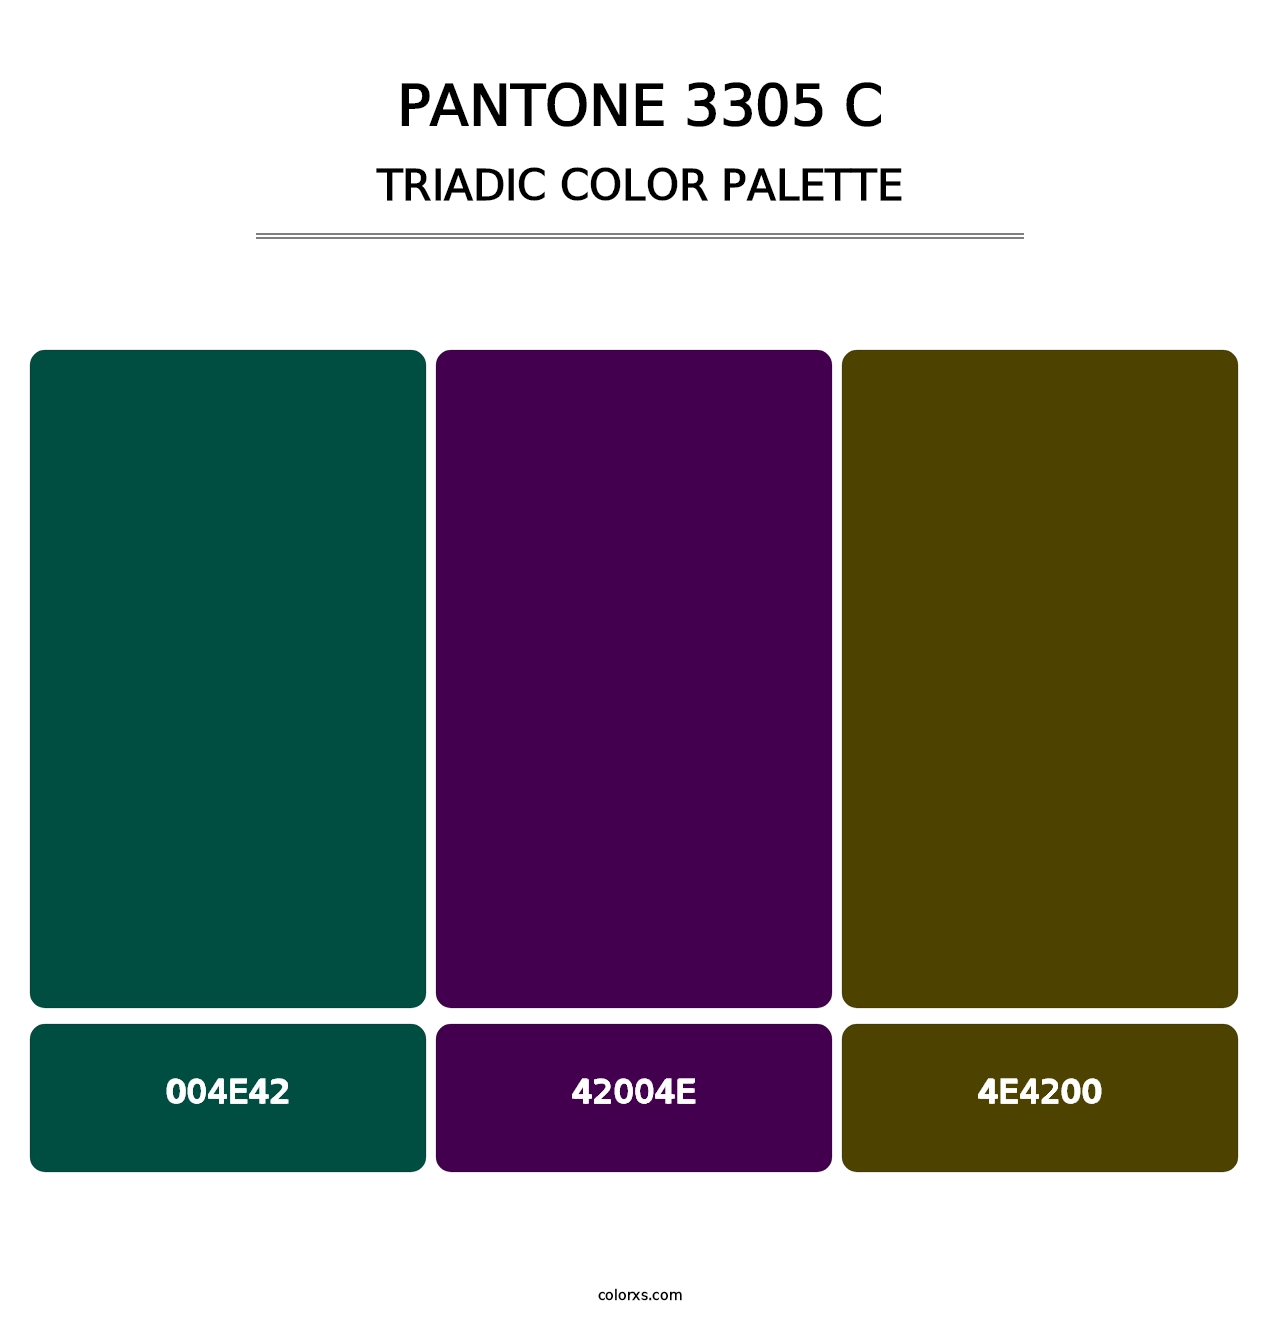 PANTONE 3305 C - Triadic Color Palette